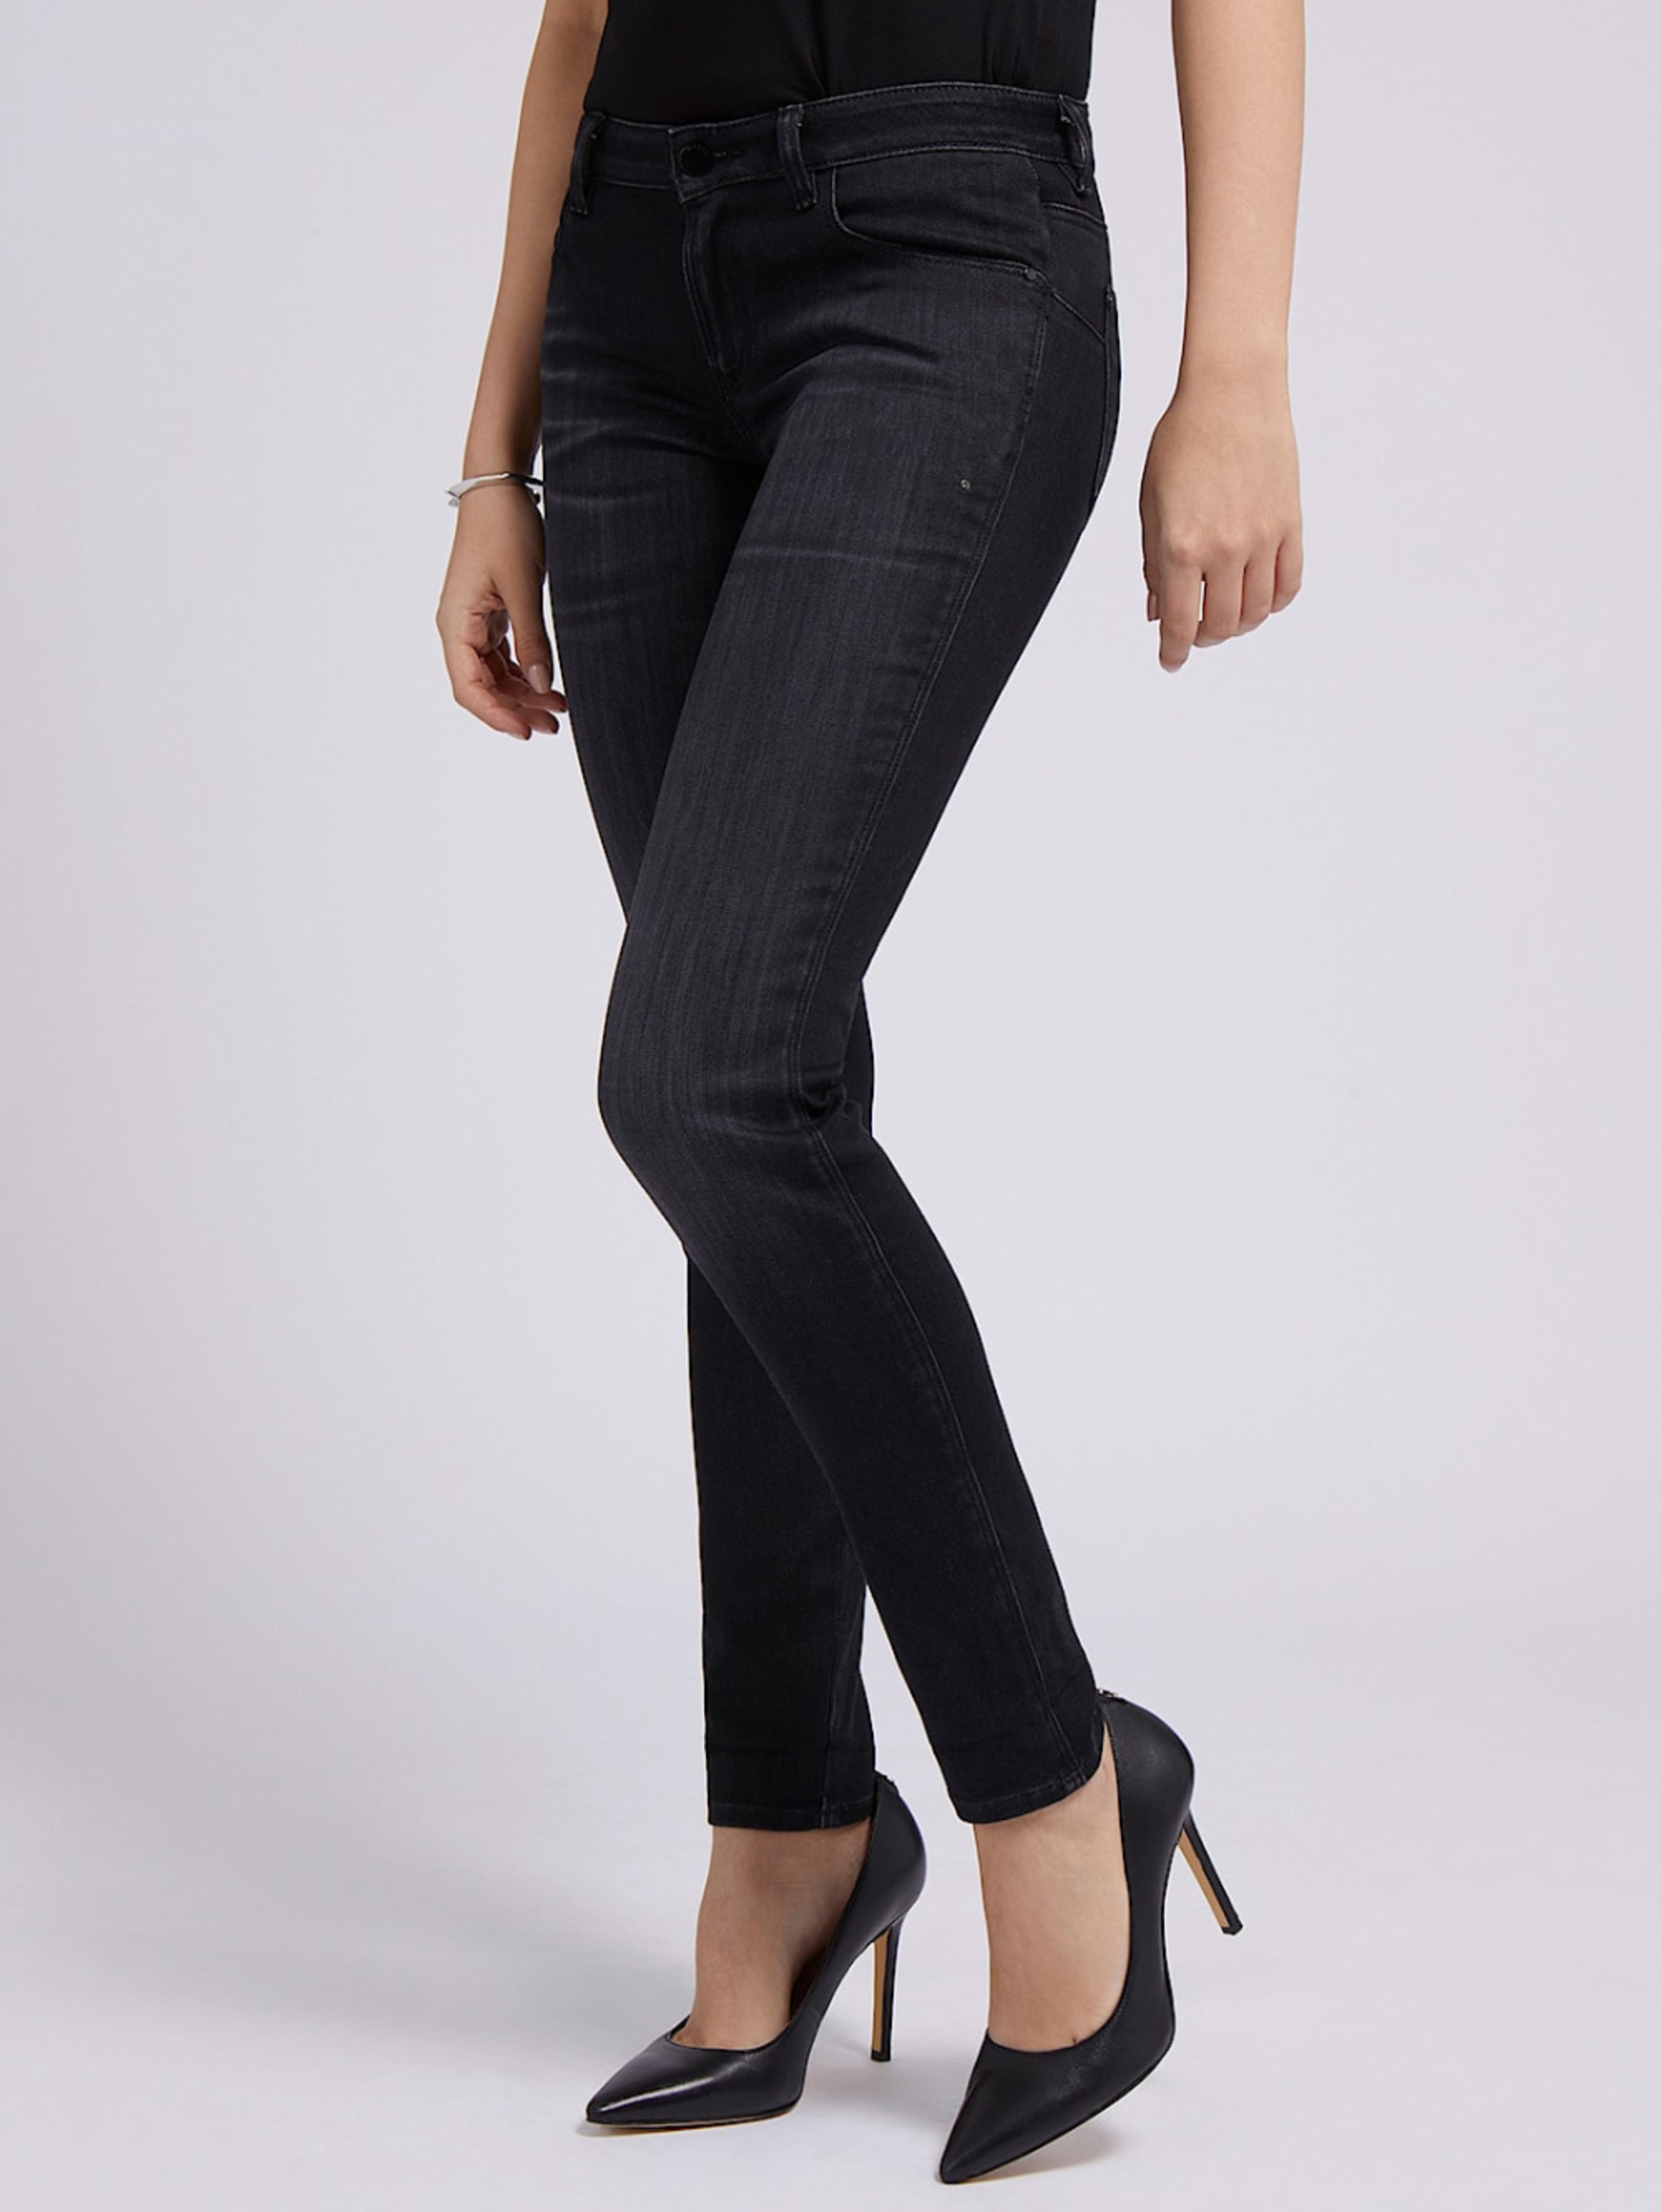 Guess dámské černé džíny - 26 (WRMI)